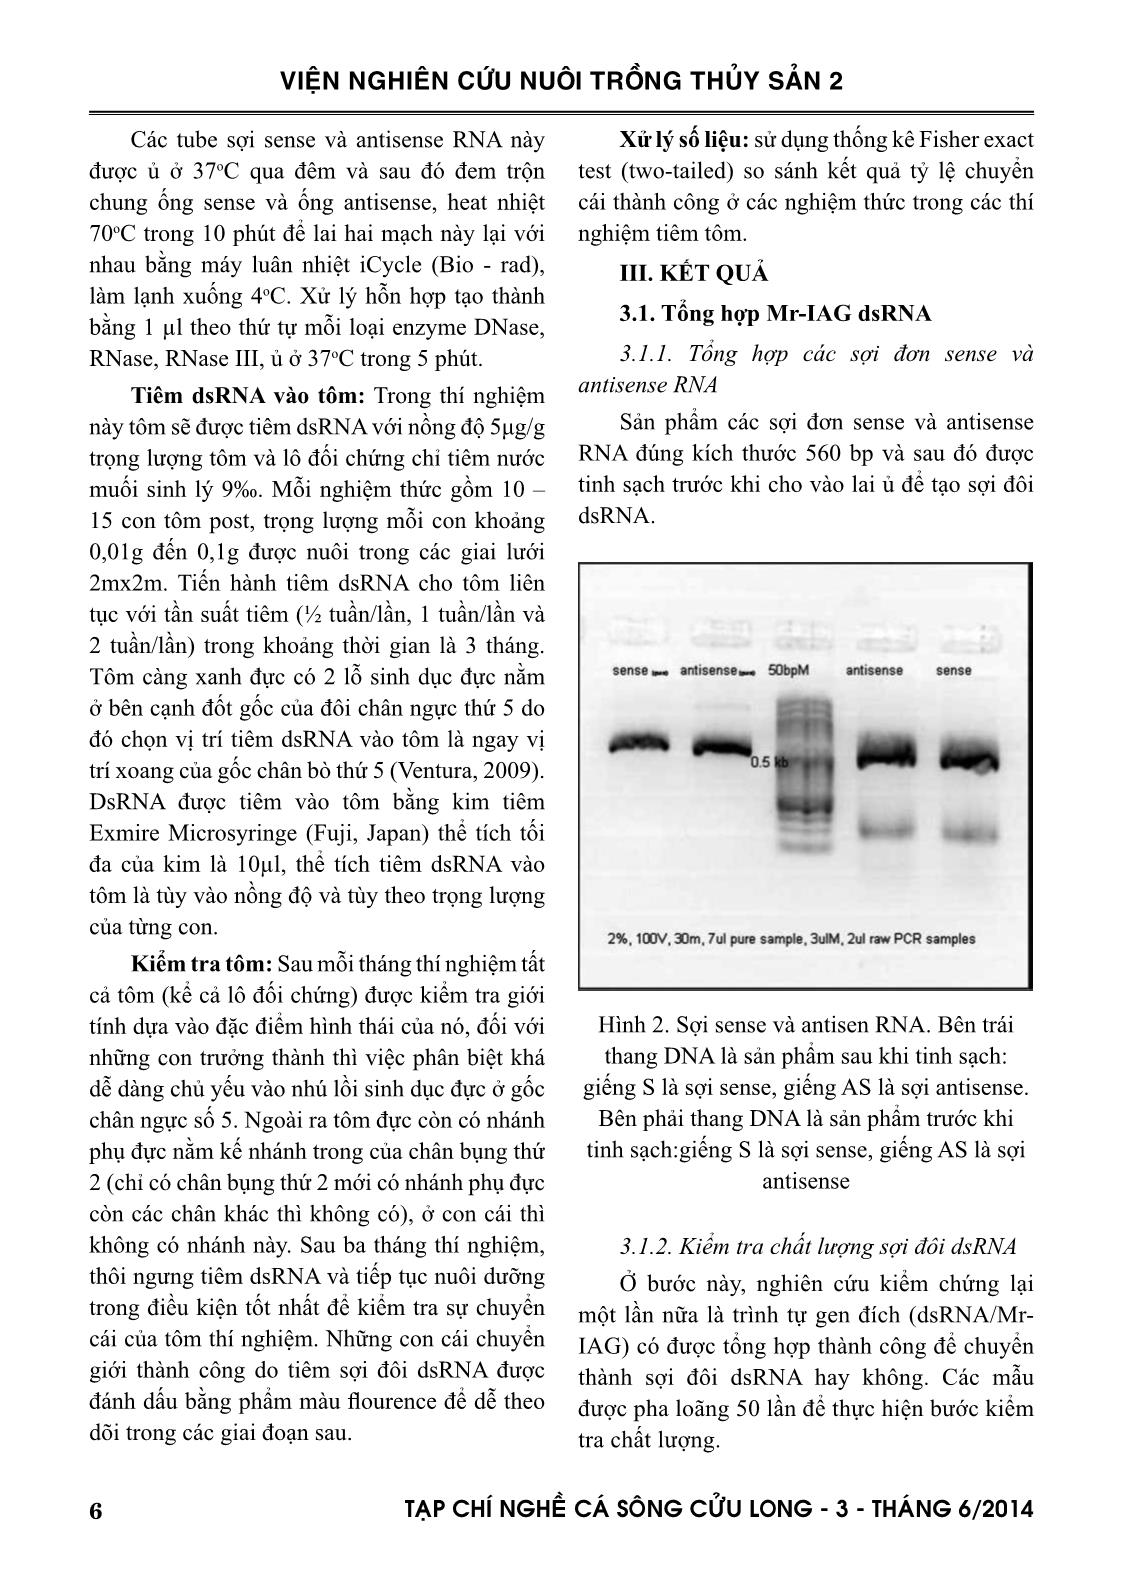 Tạp chí Nghề cá sông Cửu Long - Số 03/2014 trang 6